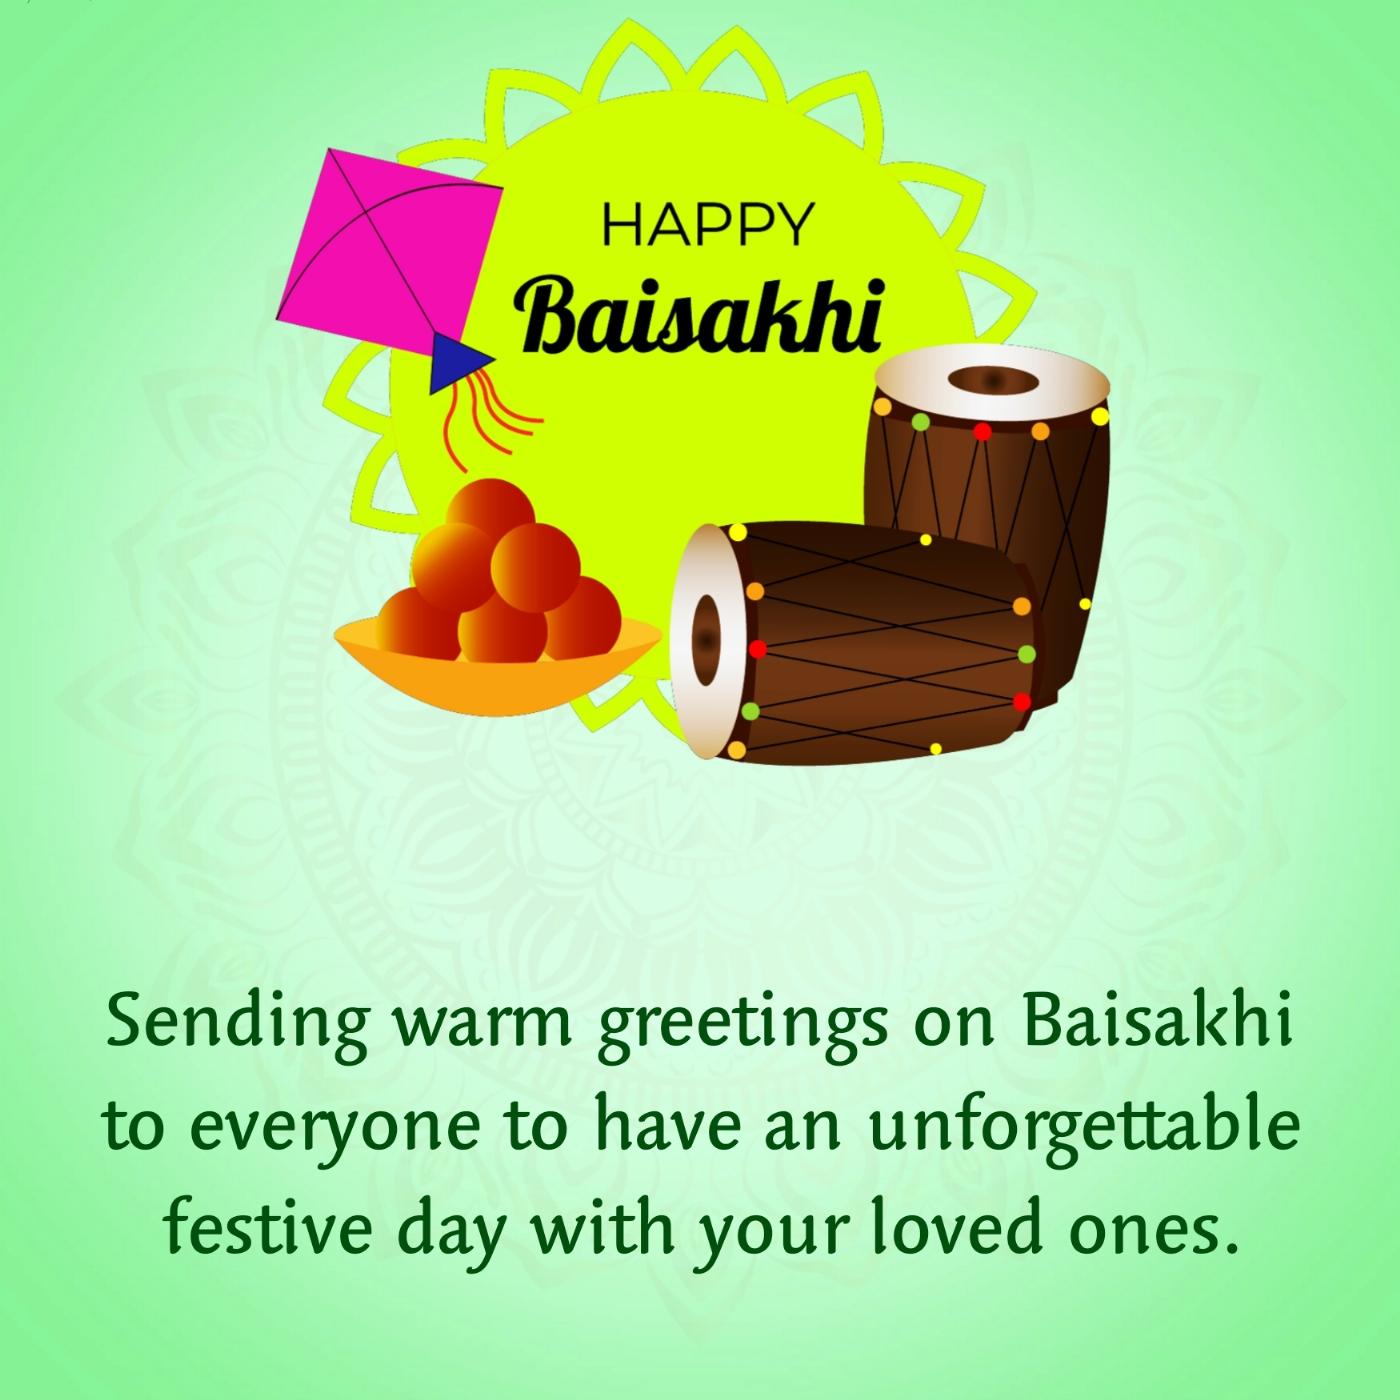 Sending warm greetings on Baisakhi to everyone